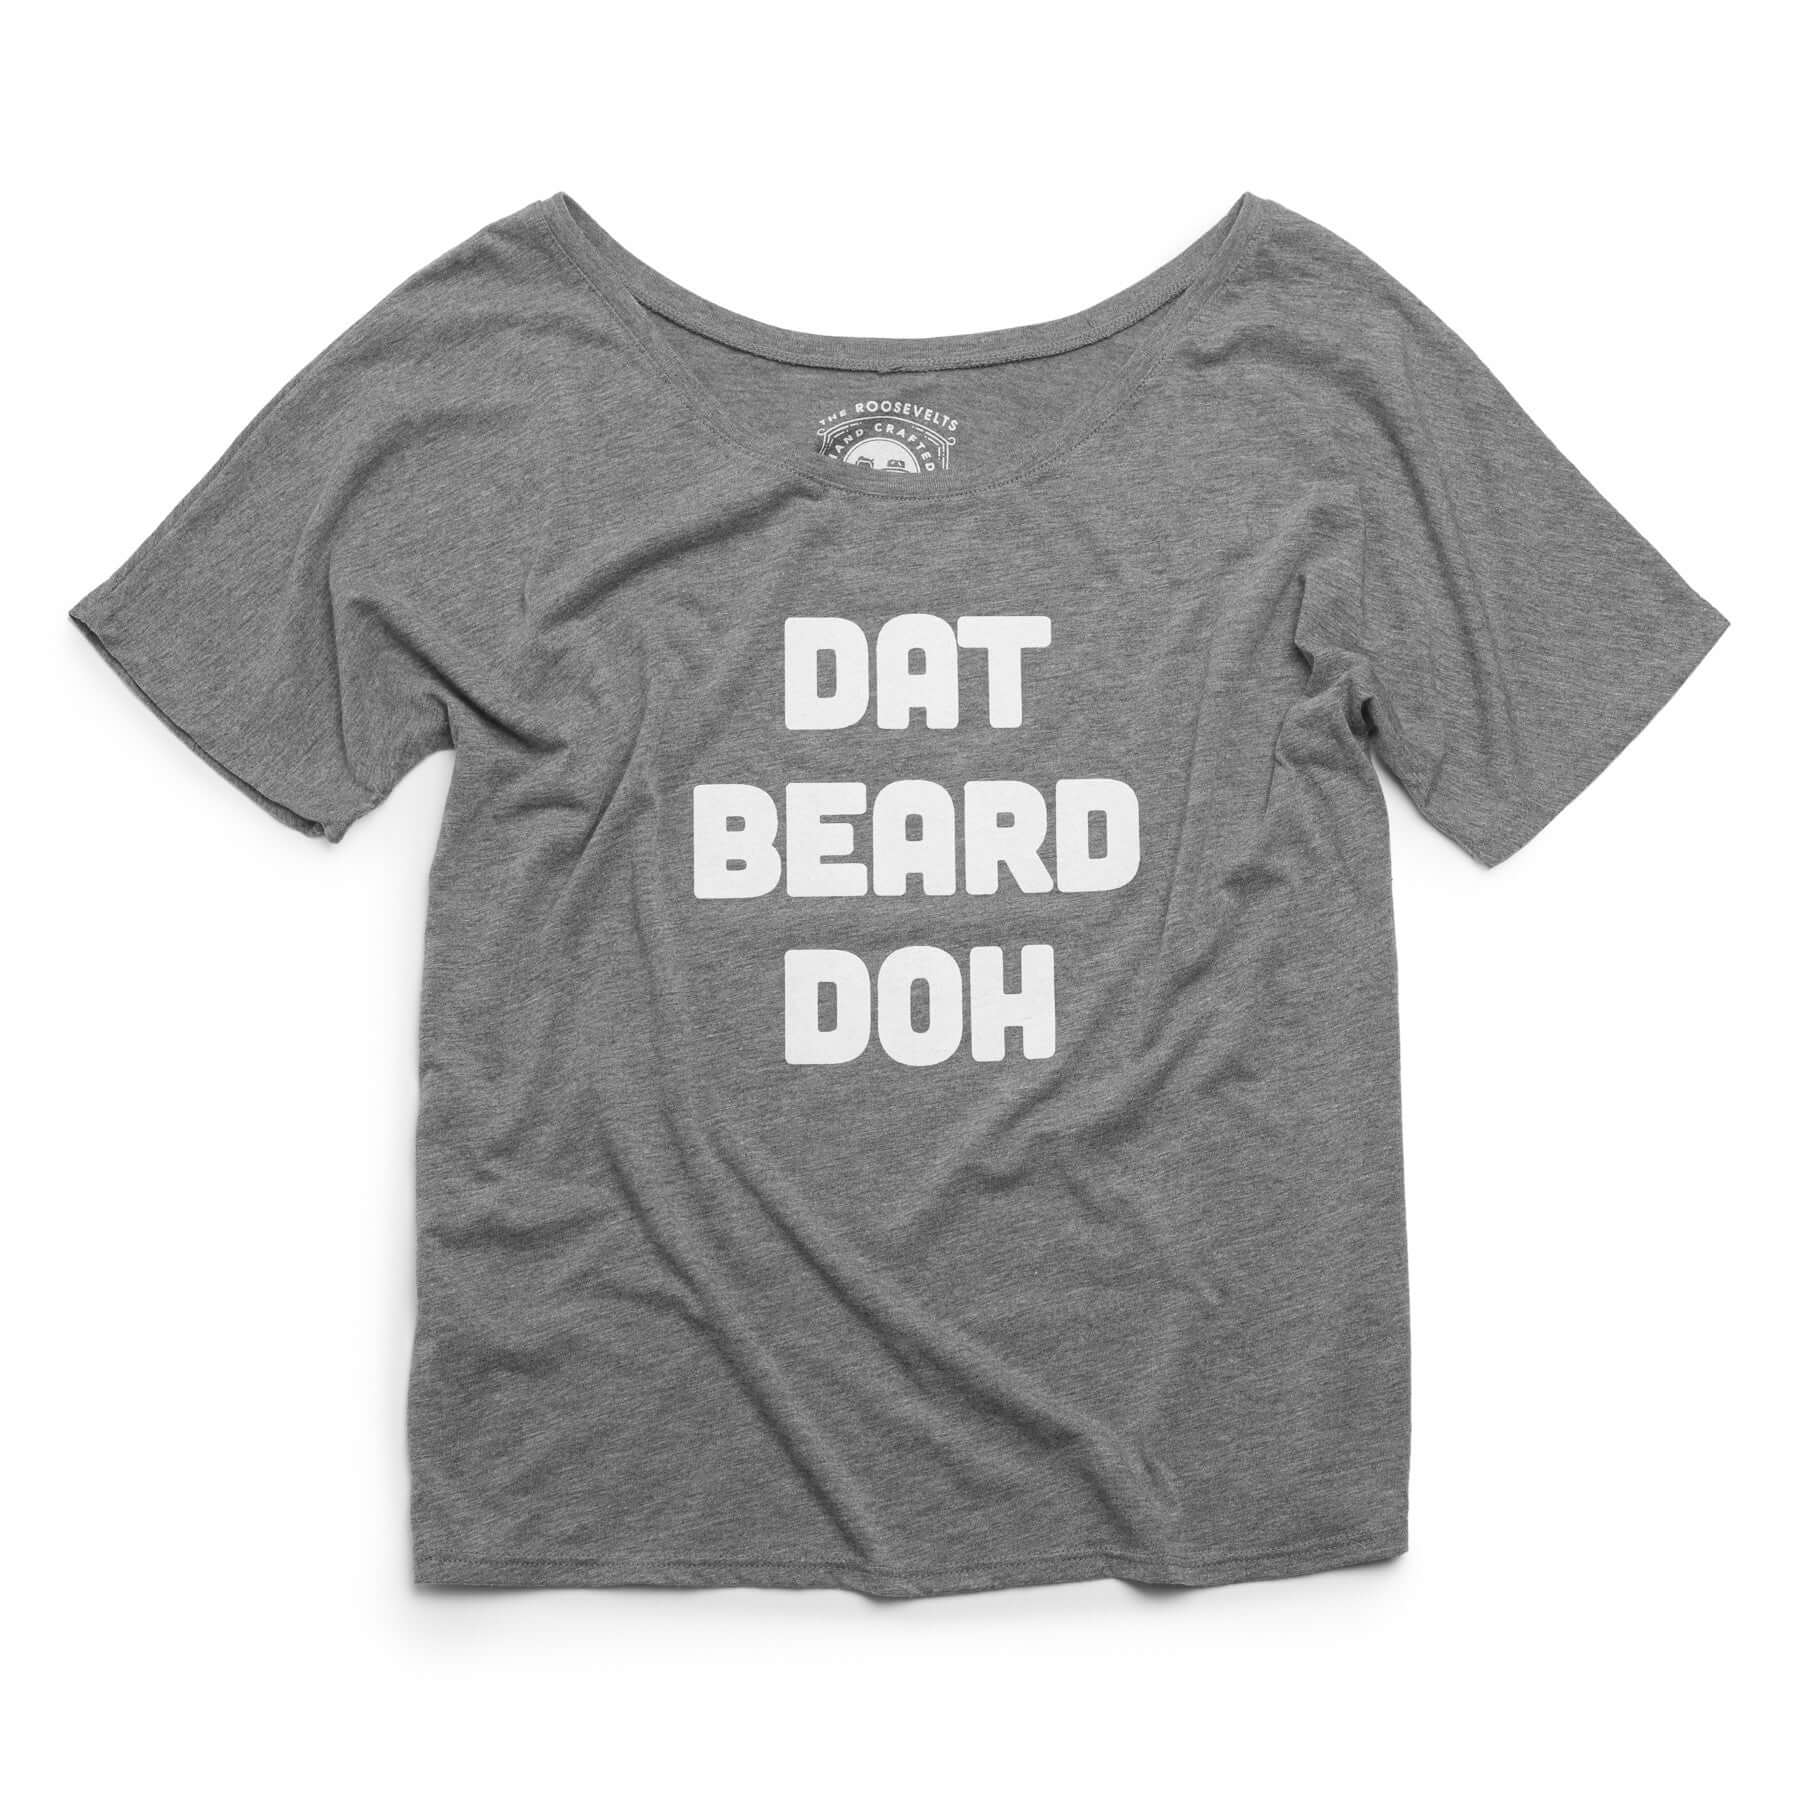 "Dat Beard Doh" Women's Slouchy Shirt - Roosevelt Supply Co.